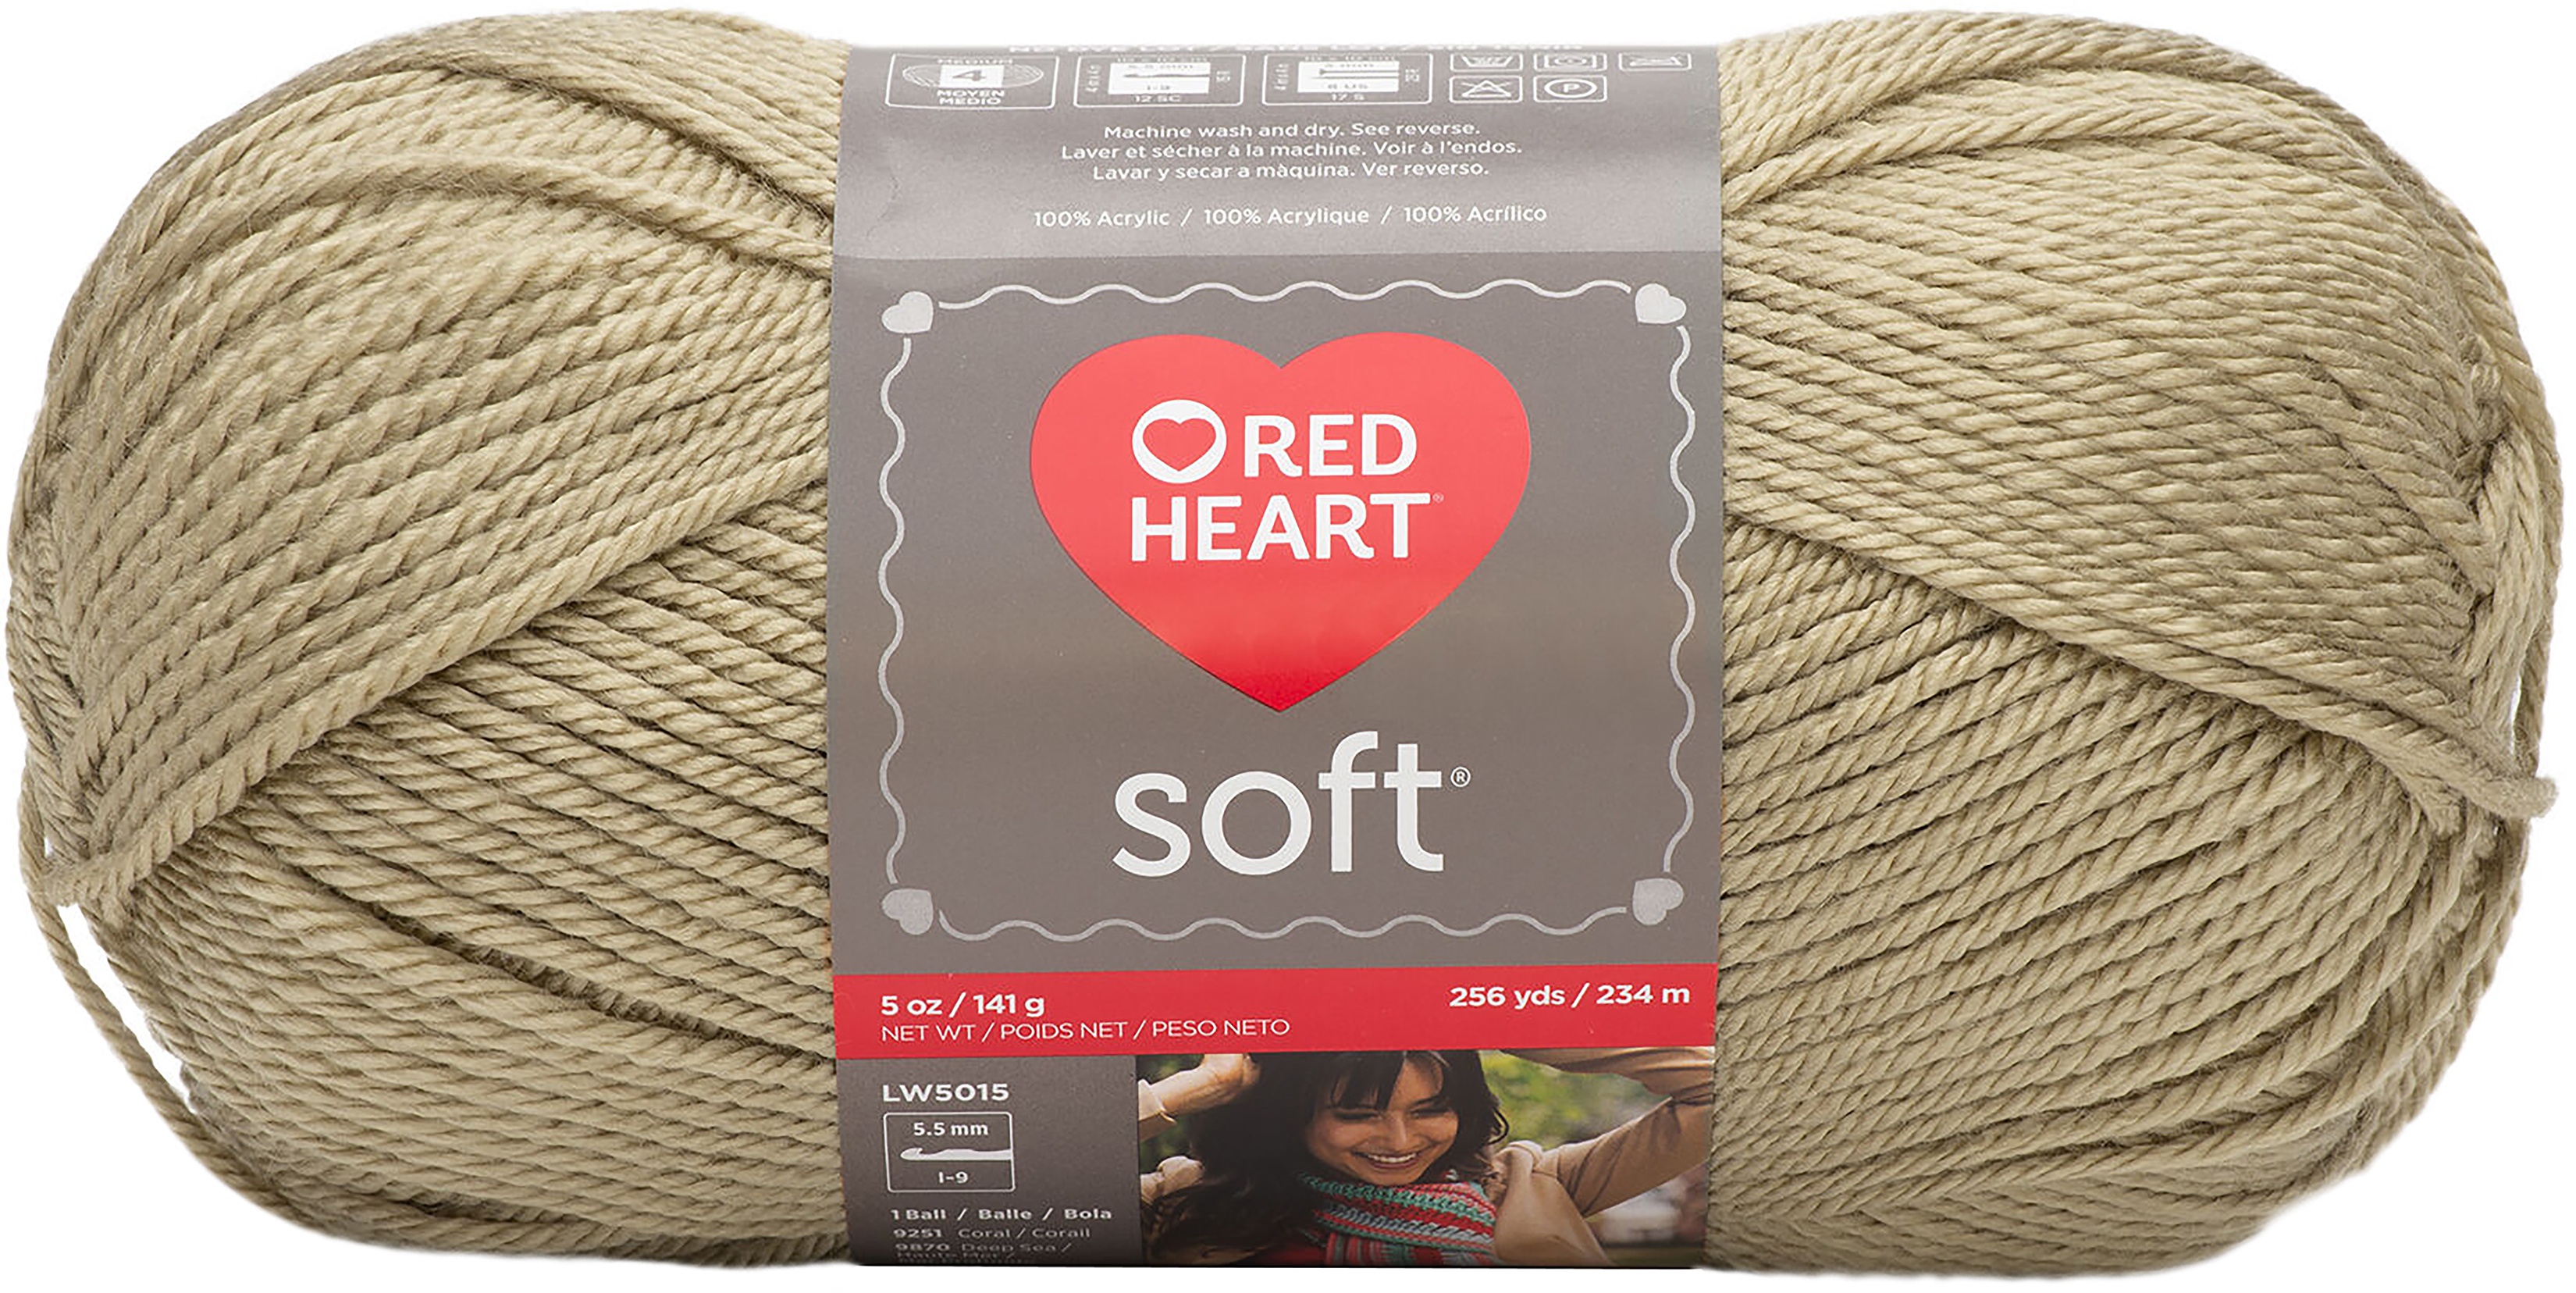 C&C Red Heart Soft Yarn 5oz 256yd Wheat - image 1 of 2